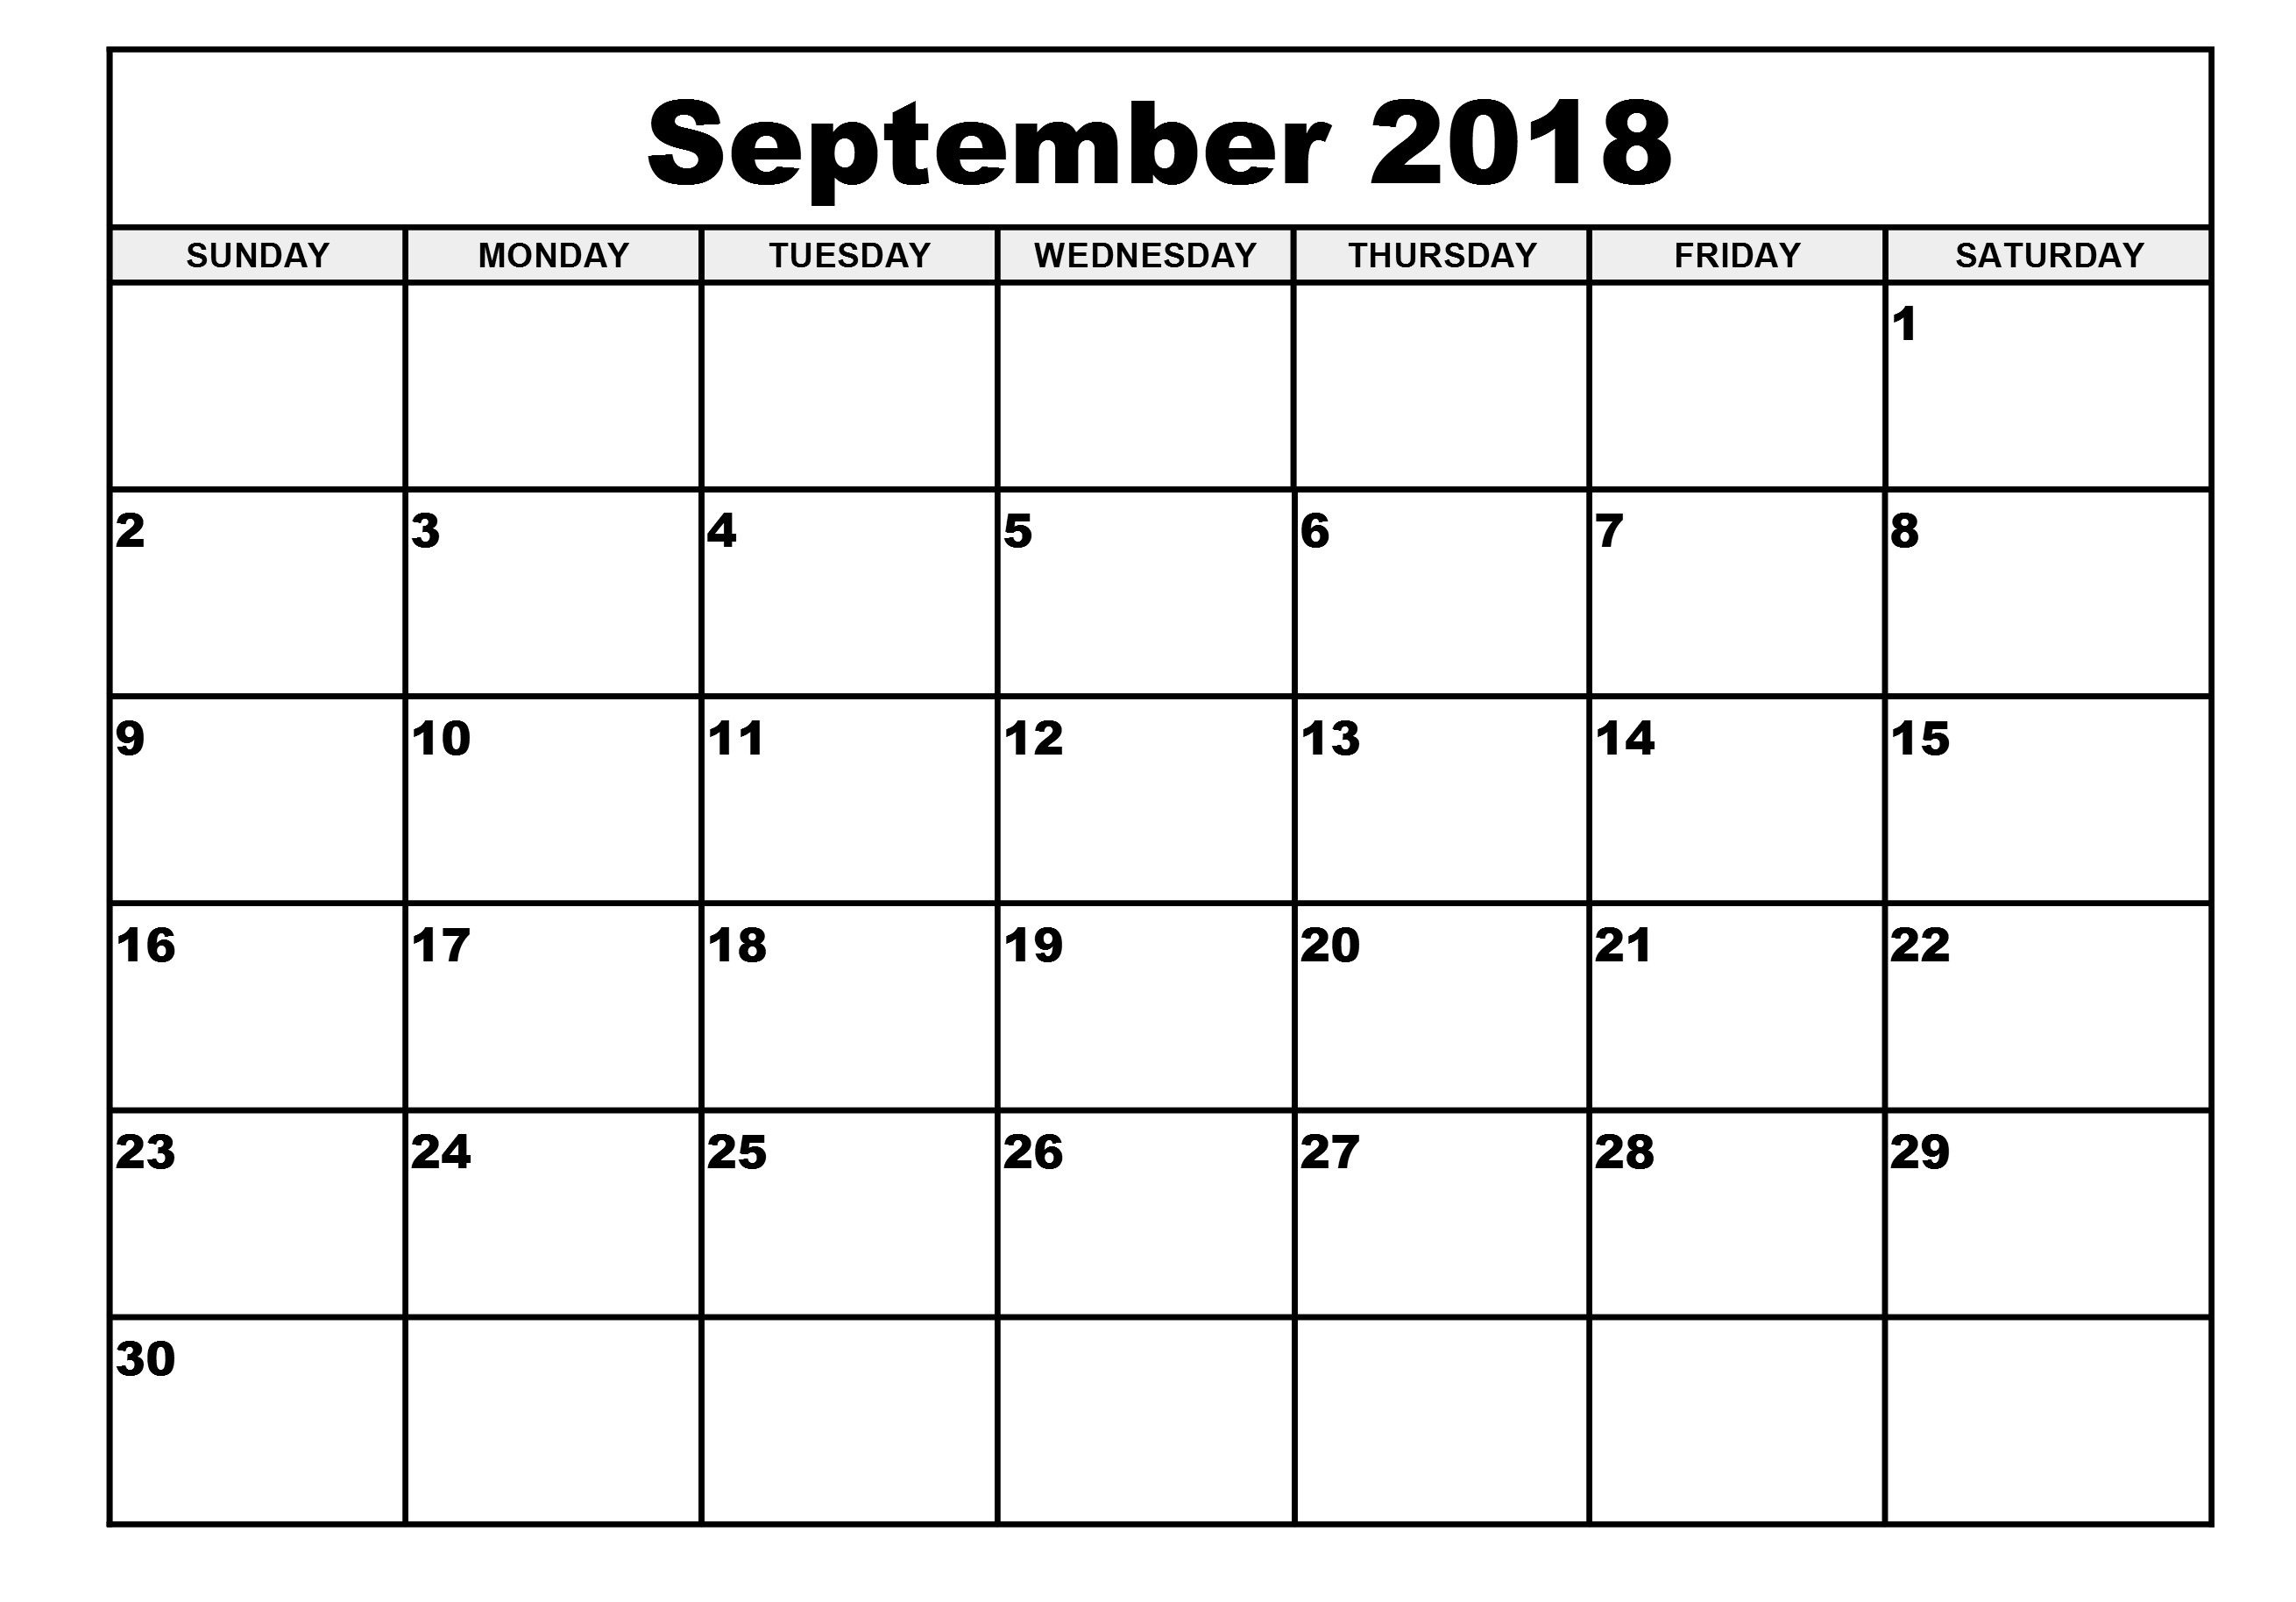 September 2018 Calendar Template Google Docs – Printable Calendar Remarkable Blank Calendar Google Docs